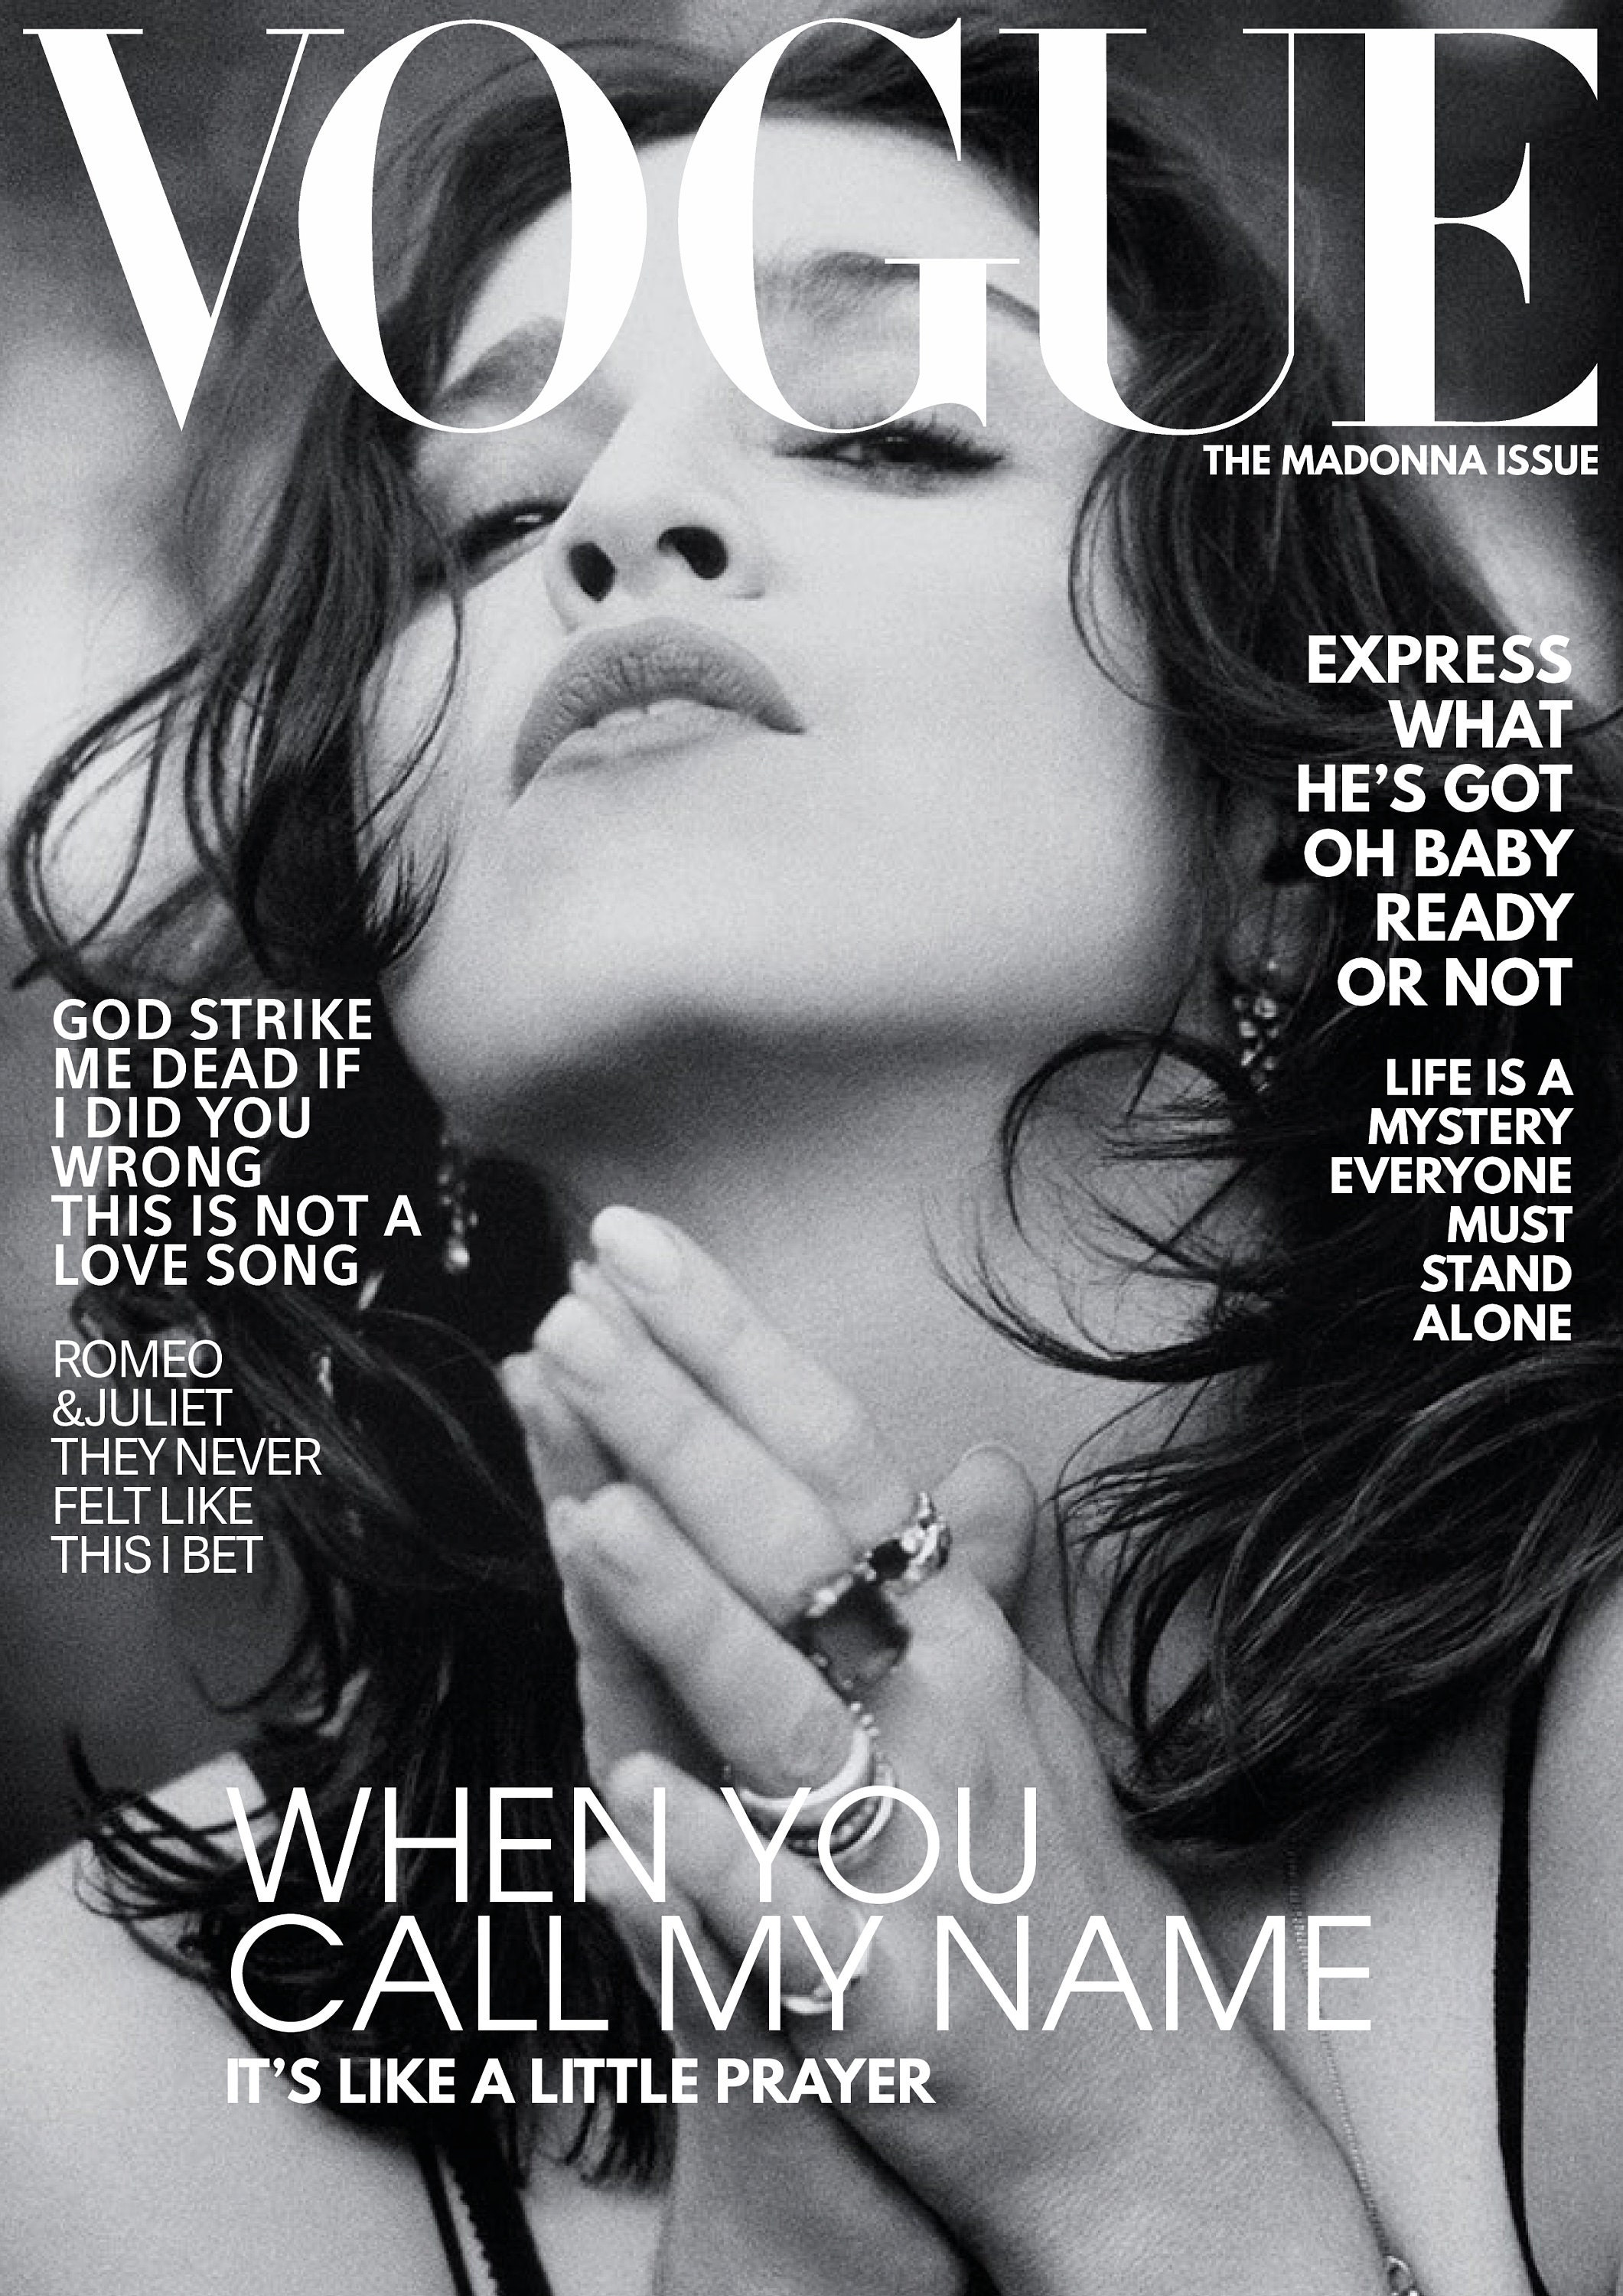 Discover Madonna Vogue Magazine A4 Cover Like a Prayer Album Inspired